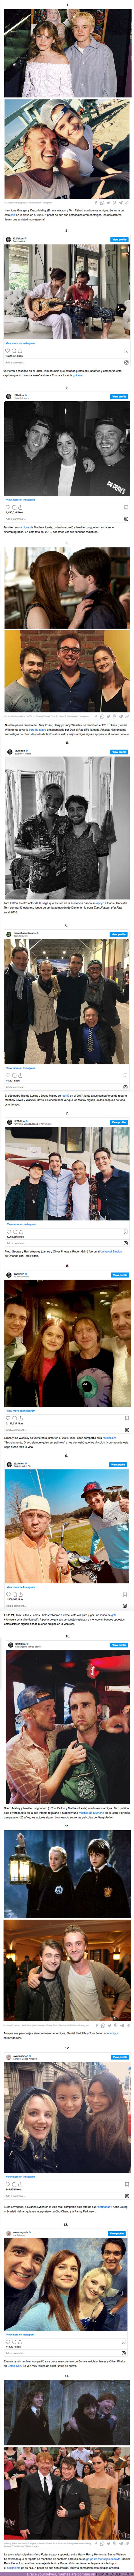 92412 - GALERÍA: 10+ Imágenes que demuestran que el reparto de “Harry Potter” todavía conserva una amistad mágica después de 20 años